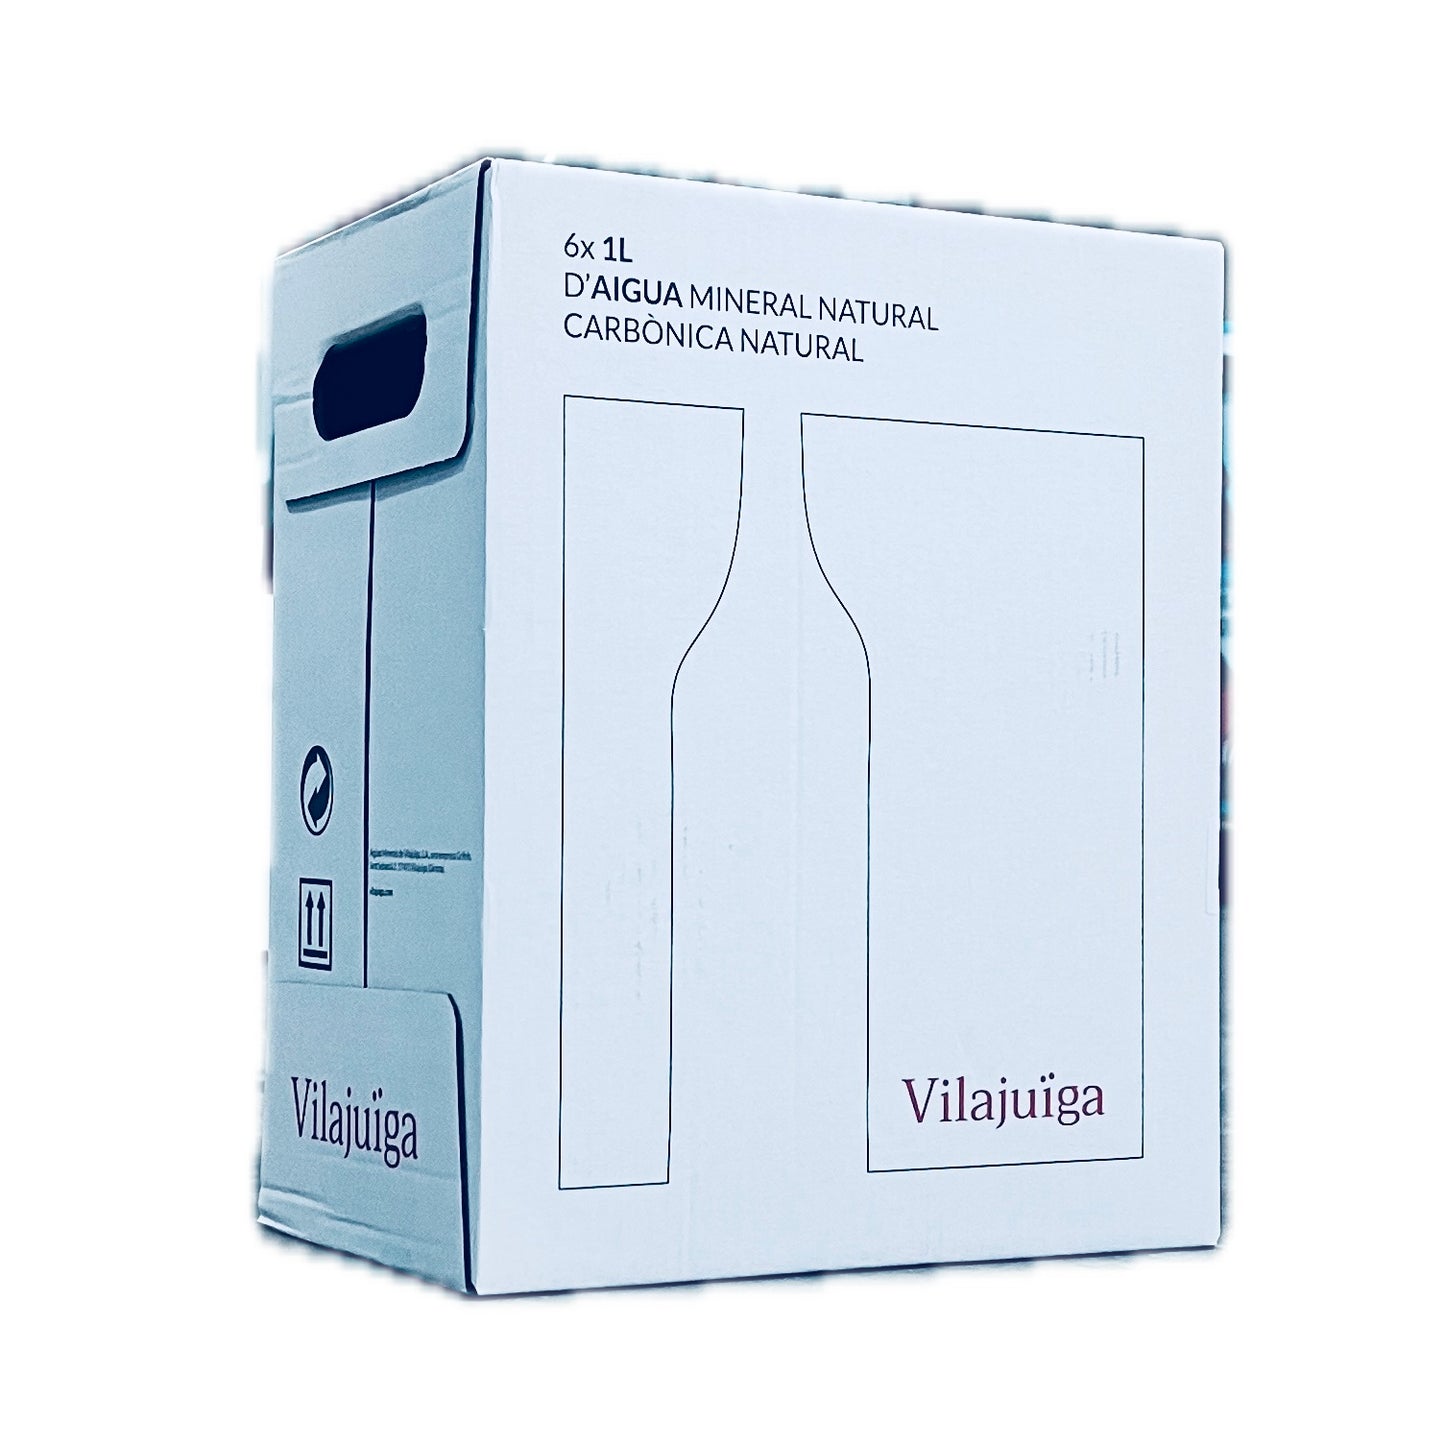 Vilajuiga Added Carbonation Mineral Water 1 Liter Case